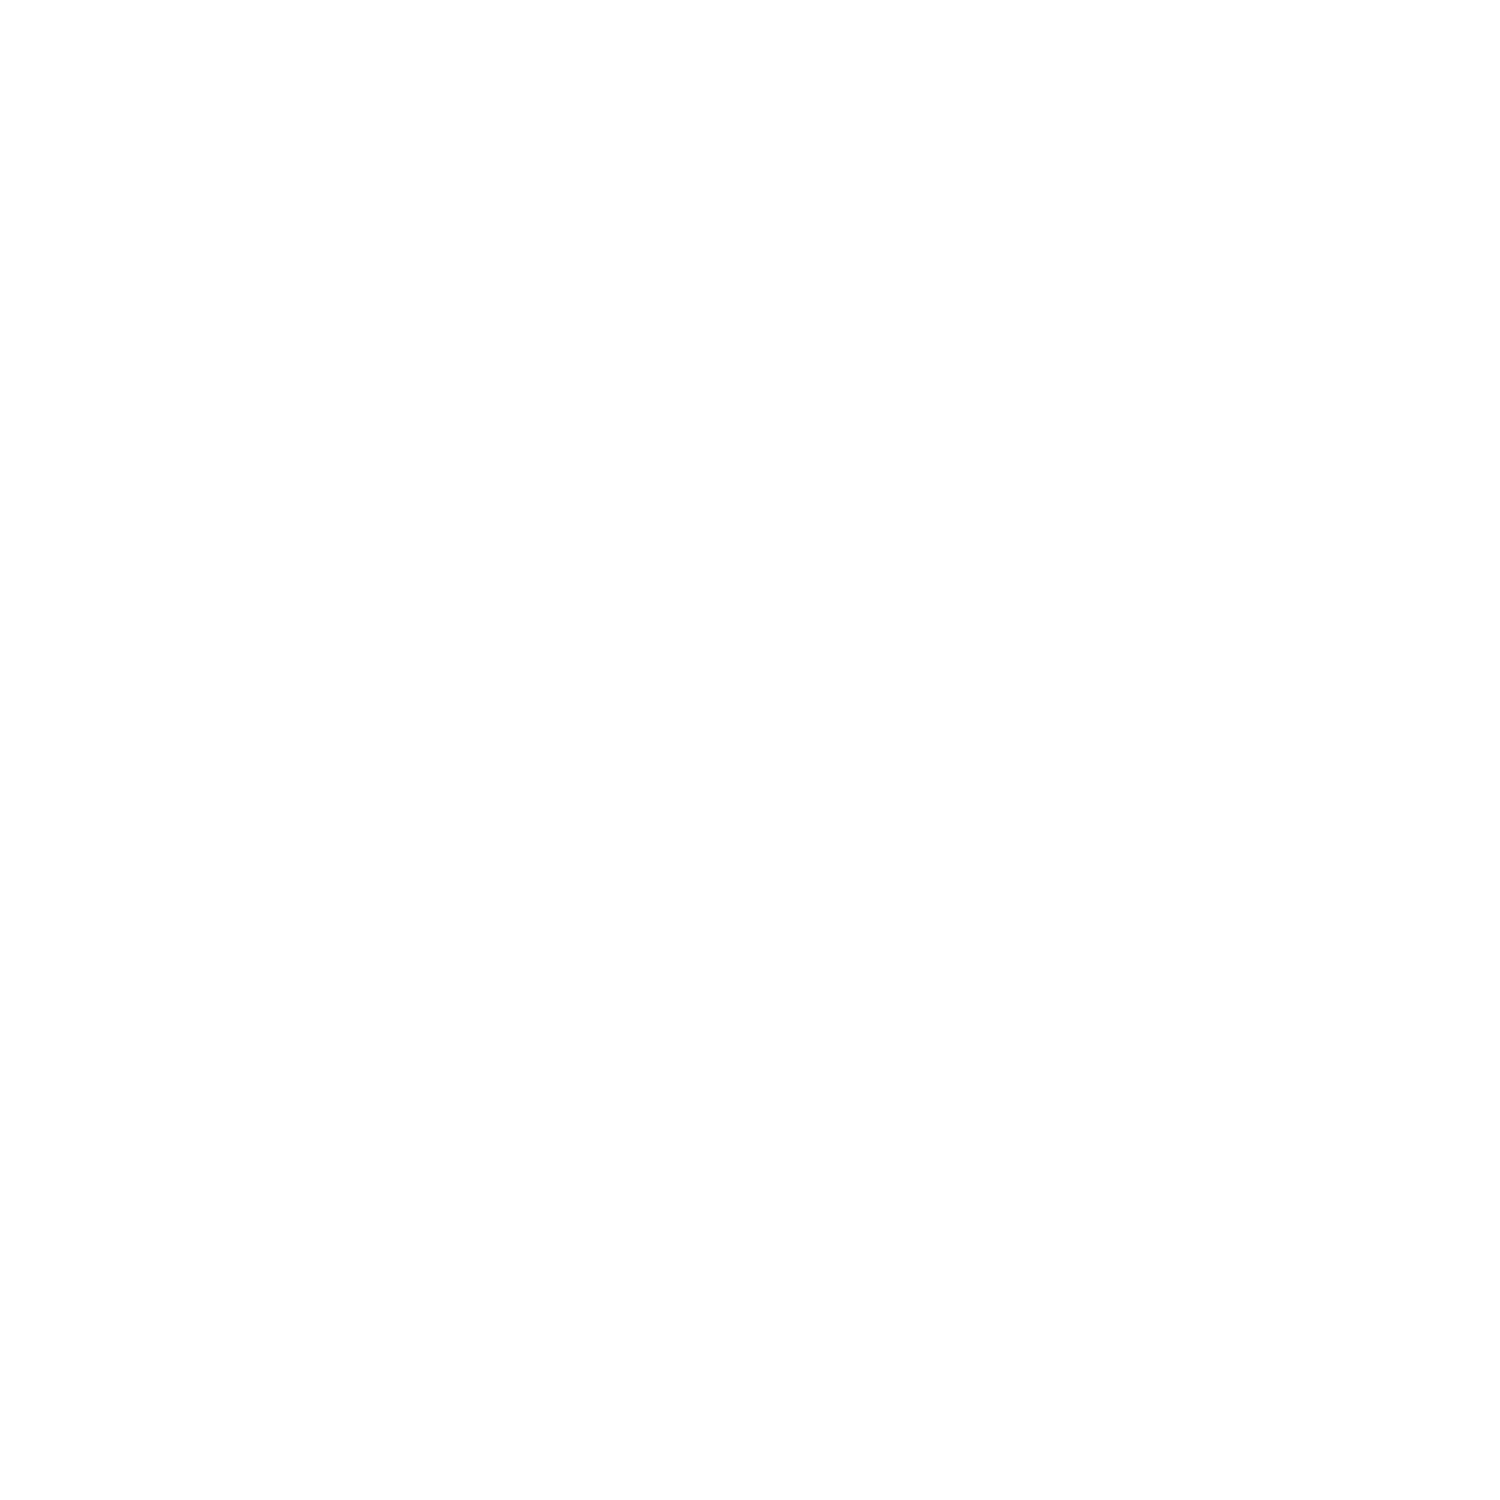 Nieuw Hittech logo gepresenteerd op de Precisiebeurs